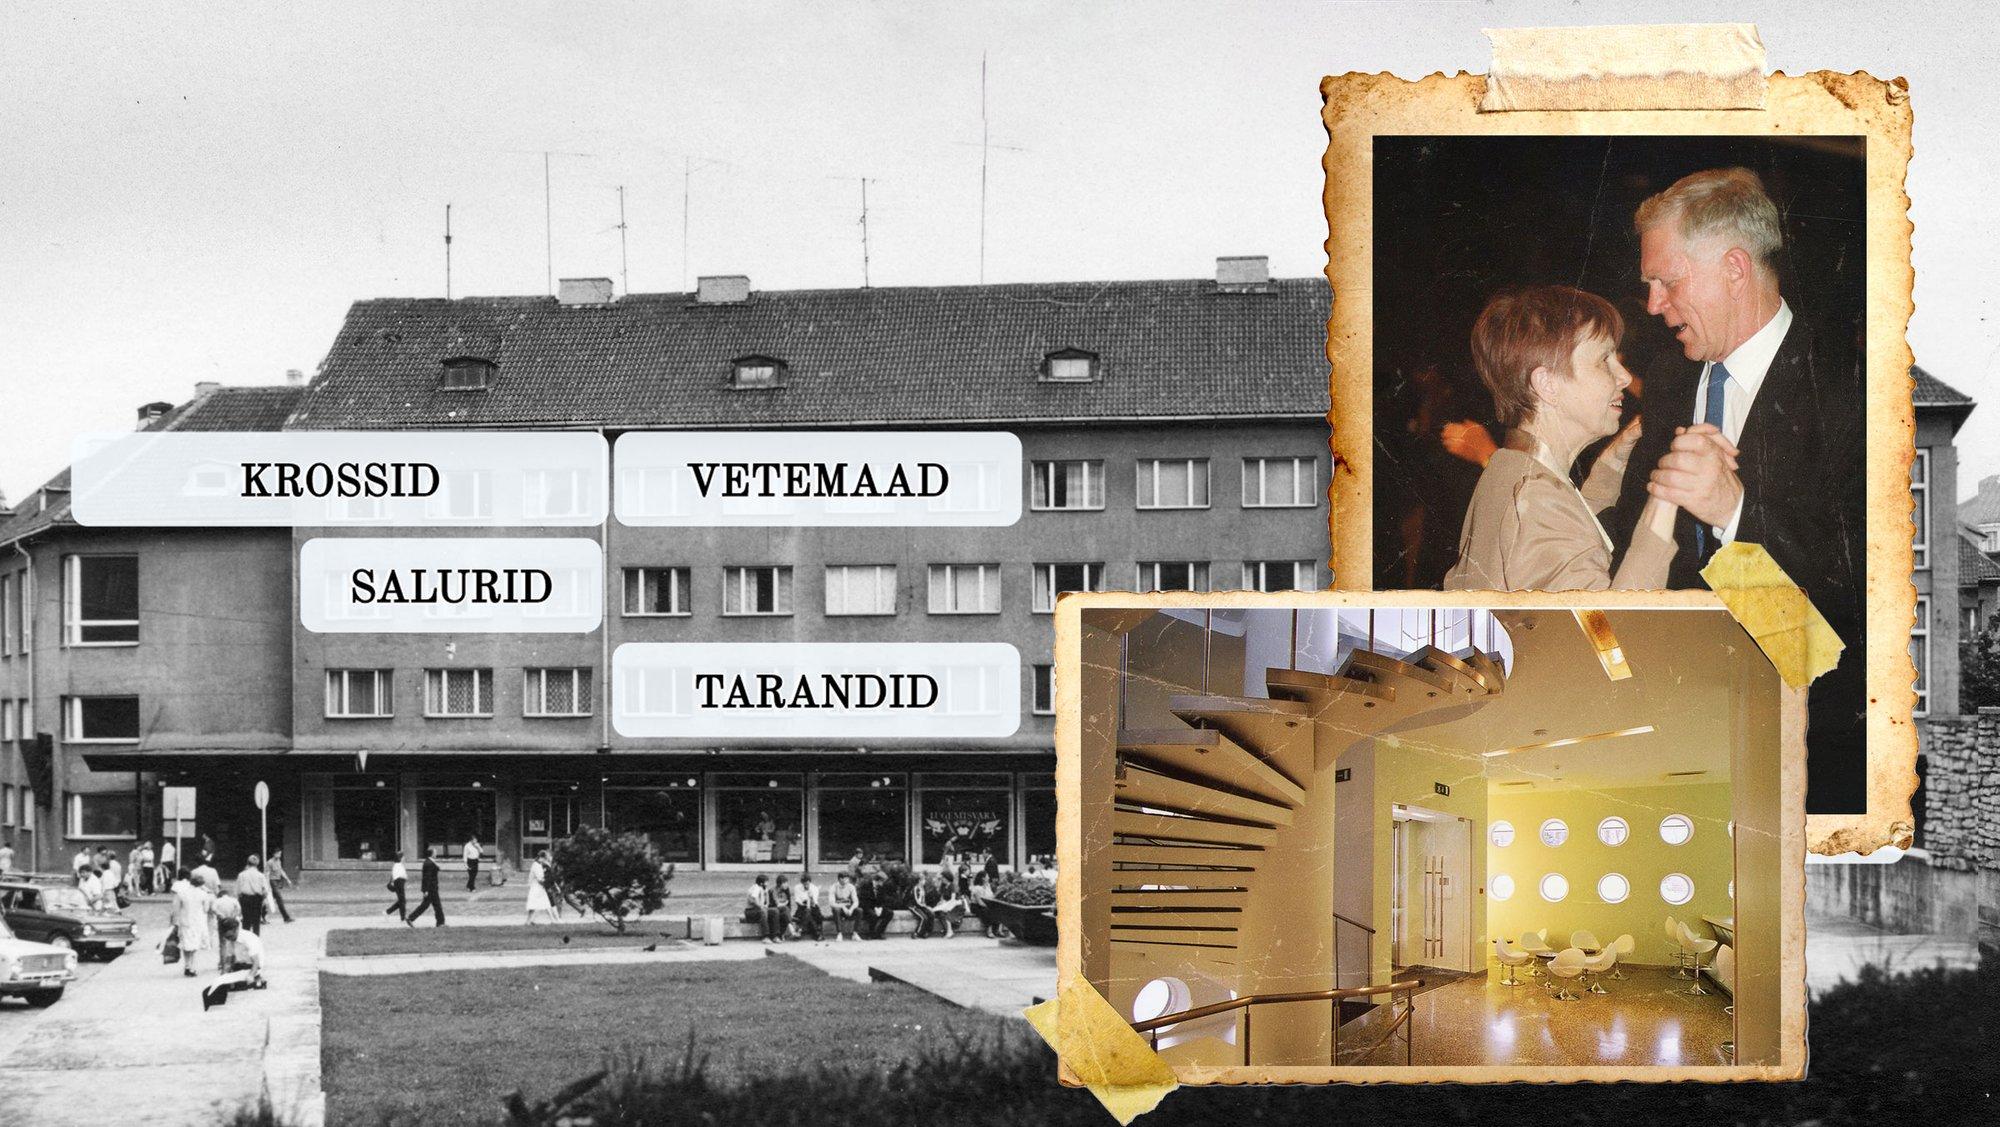 БОЛЬШАЯ ИСТОРИЯ | Смотрите, кто и где жил в Доме писателей в Таллинне! „Это был дом диссидентов, где не было ни одного просоветски мыслящего человека“ 